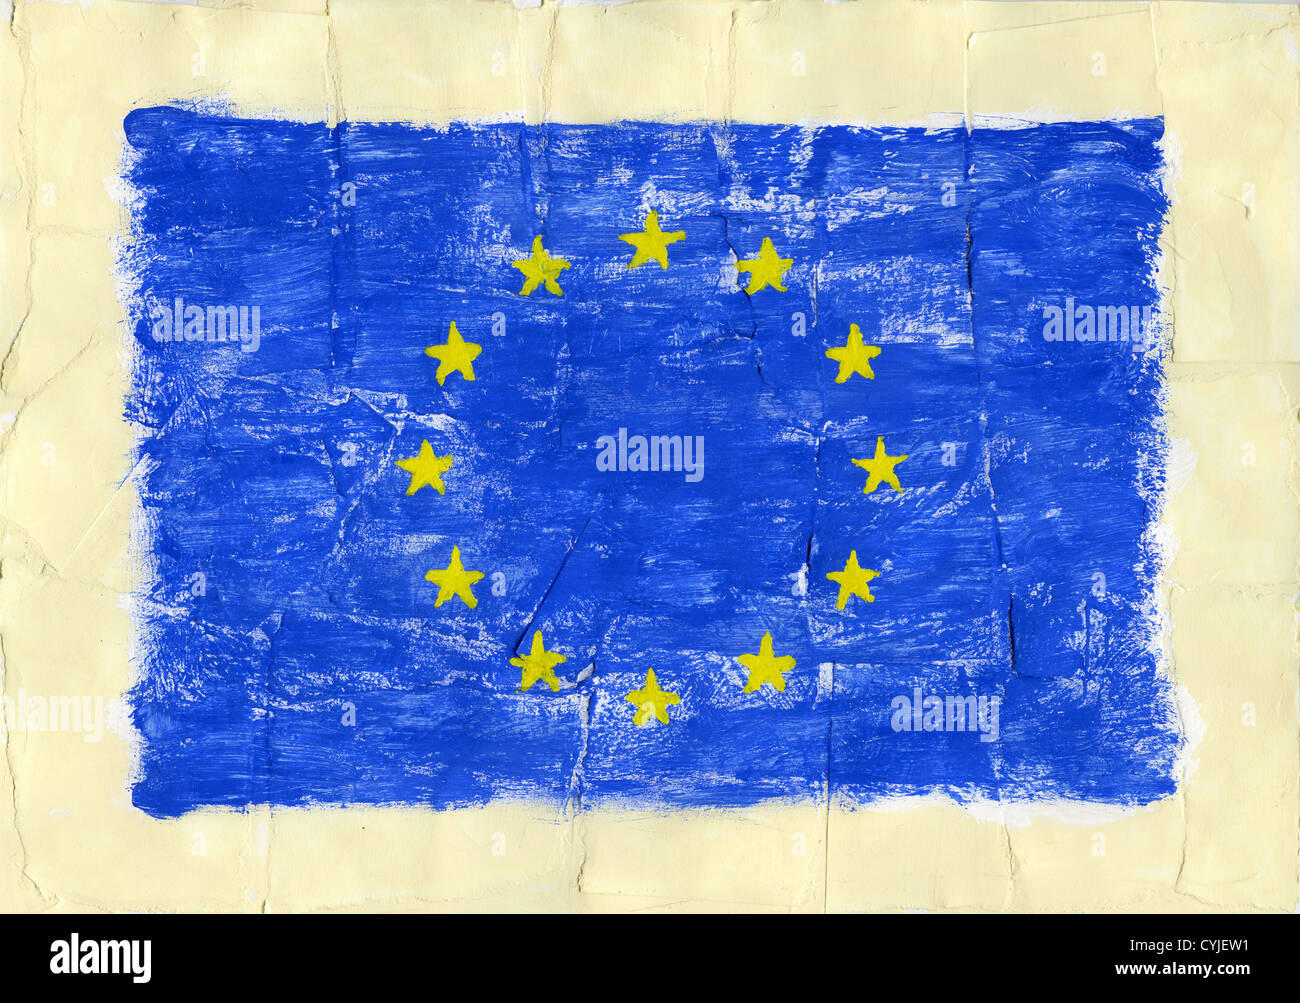 Acrylique peinte à la main d'un drapeau de l'Union européenne, l'Union européenne. Banque D'Images